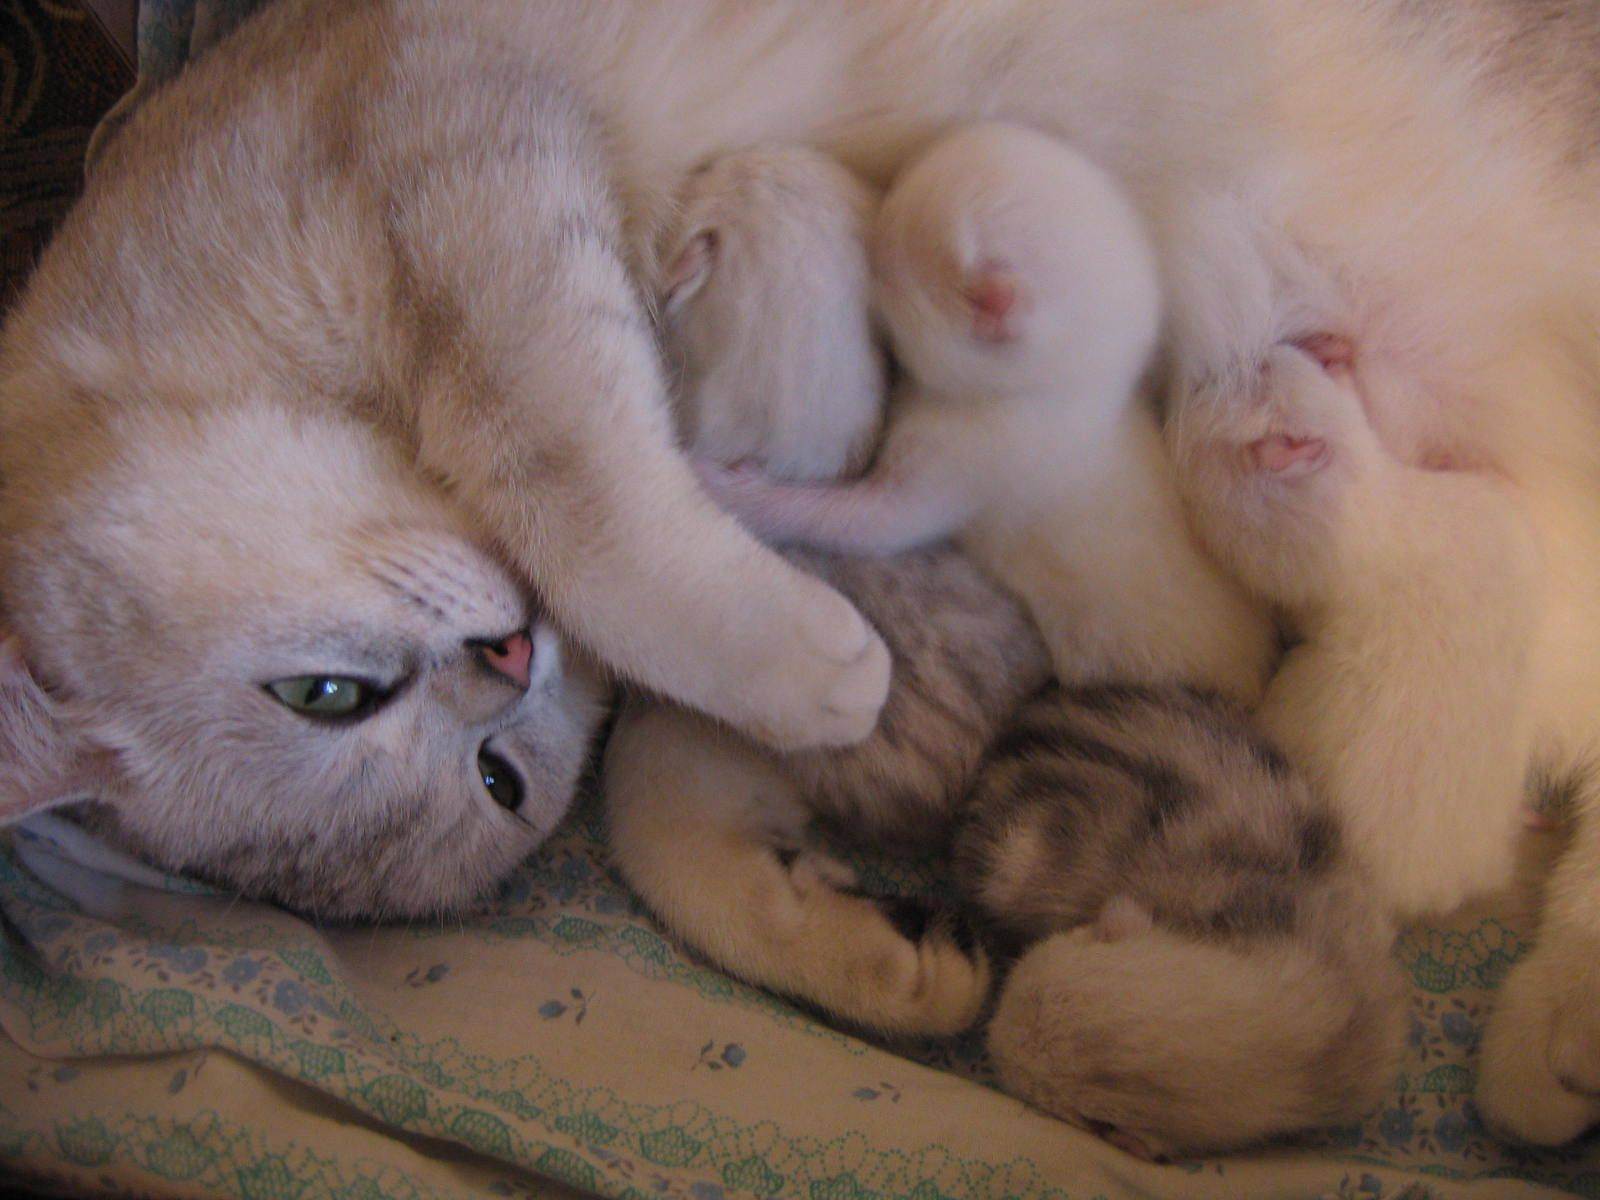 Вязка шотландских кошек беременность и роды